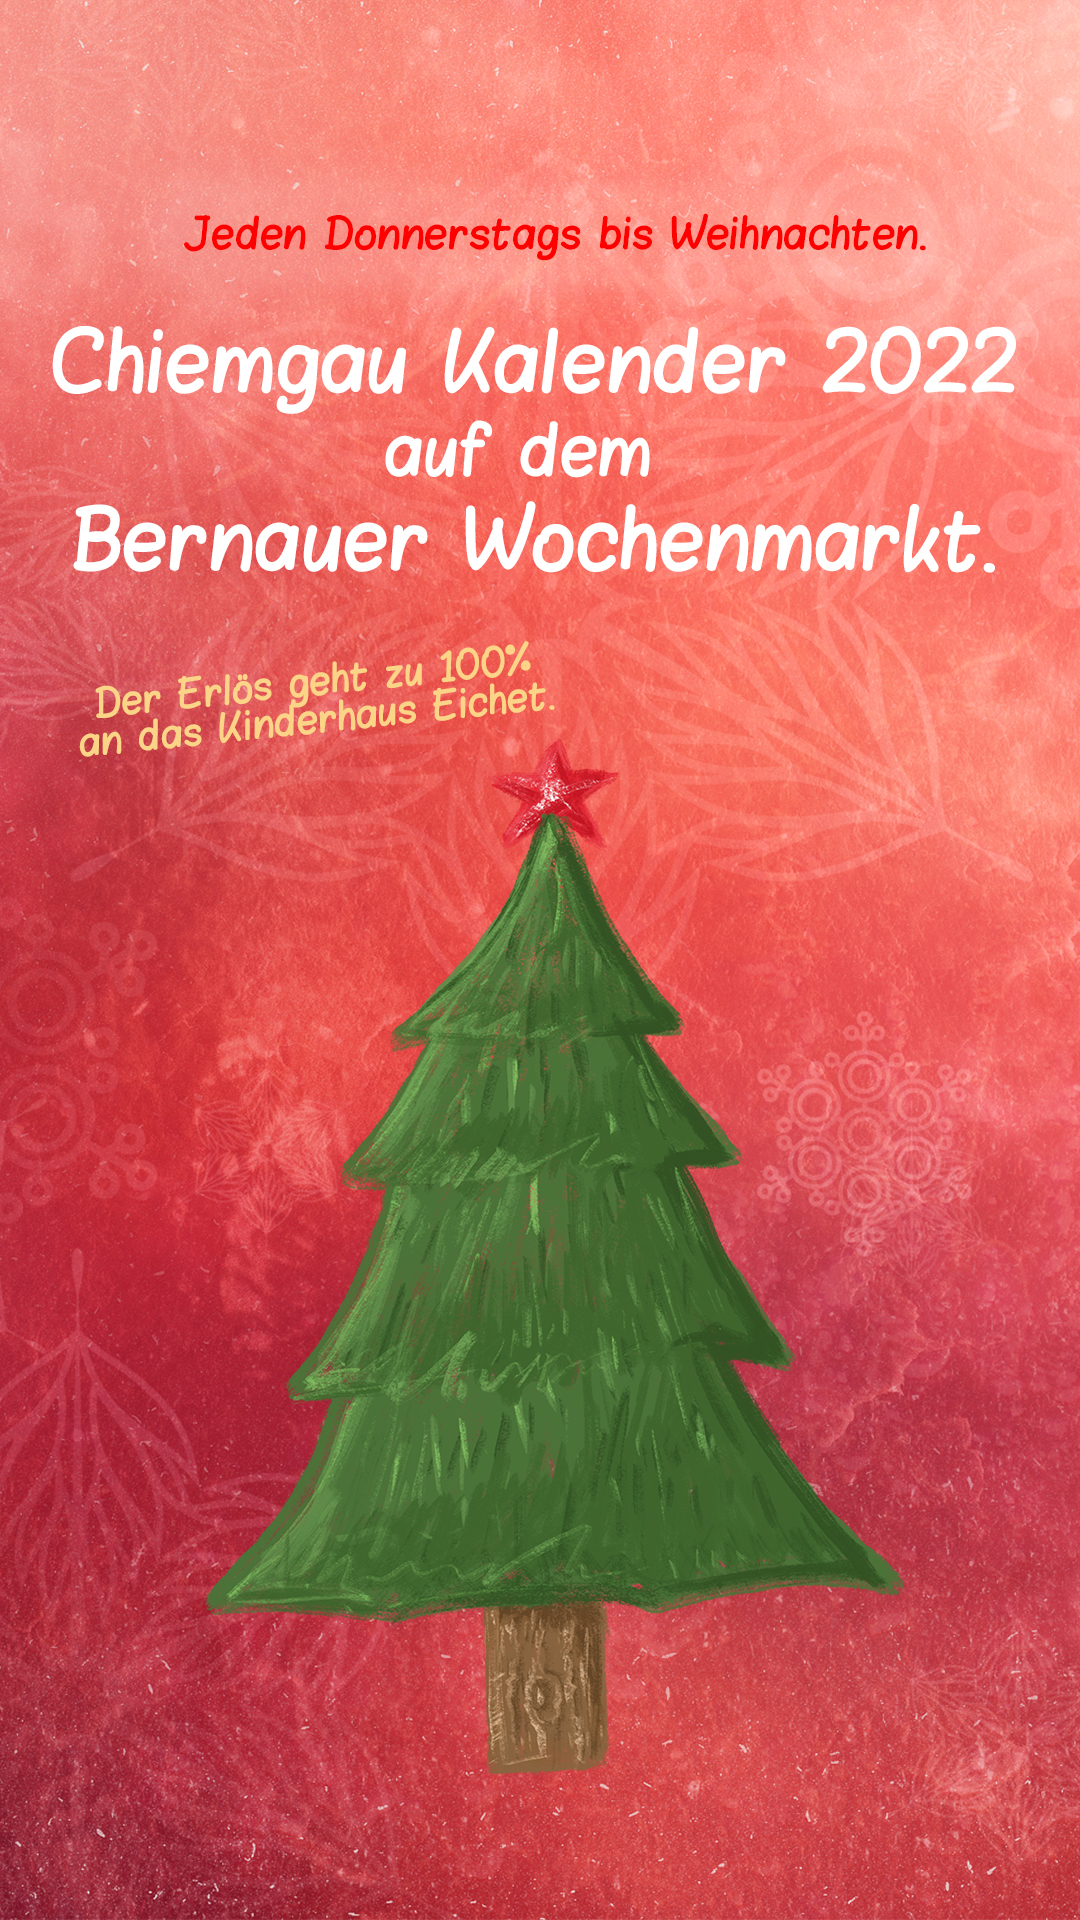 Chiemgau Kalender 2022 auf dem Wochenmarkt in Bernau 6